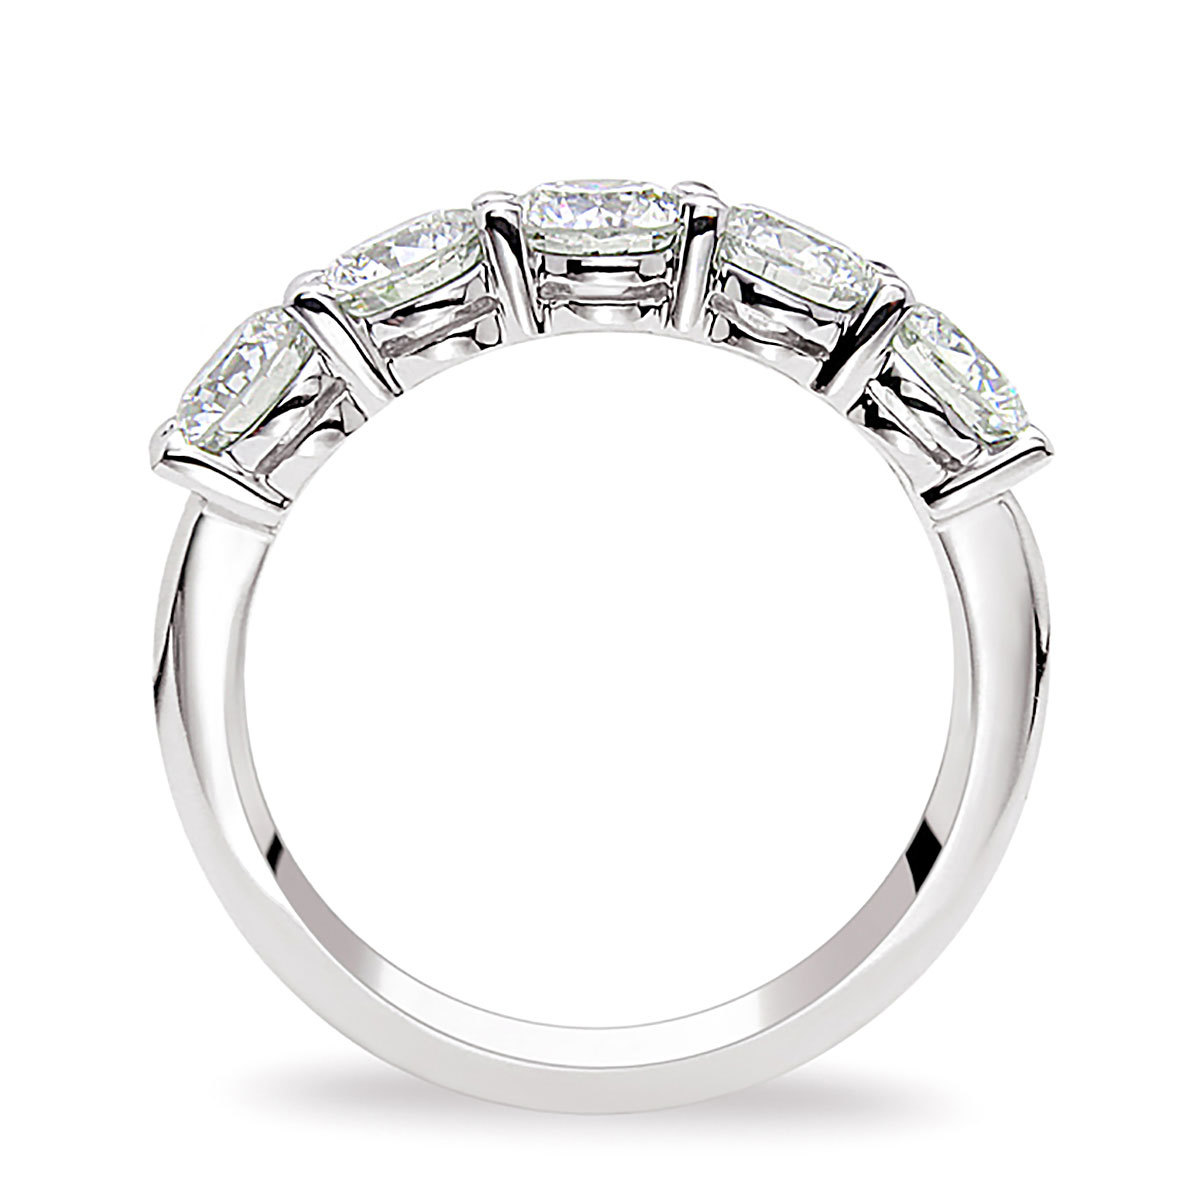 2.00ctw Round Brilliant Cut 5 Stone Diamond Ring, Platinum